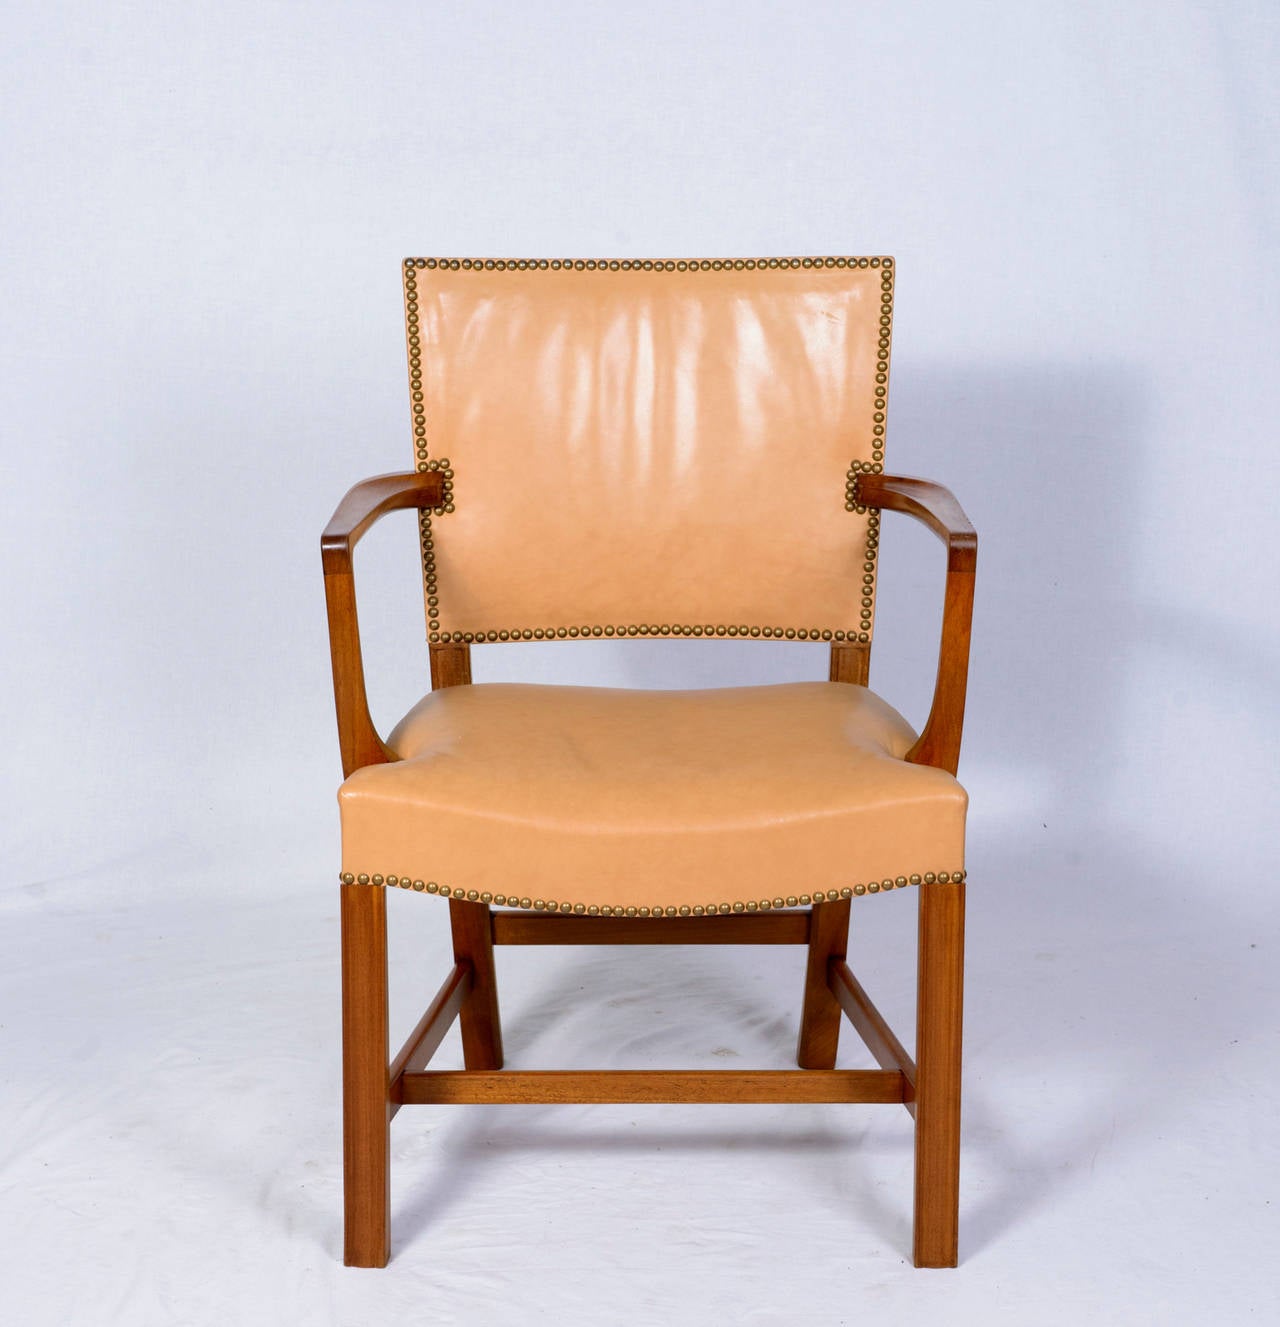 Paire de fauteuils Kaare Klint conçus en 1927 et produits par Rud Rasmussen.   Magasin anciennement connu sous le nom de ARTFUL DODGER INC